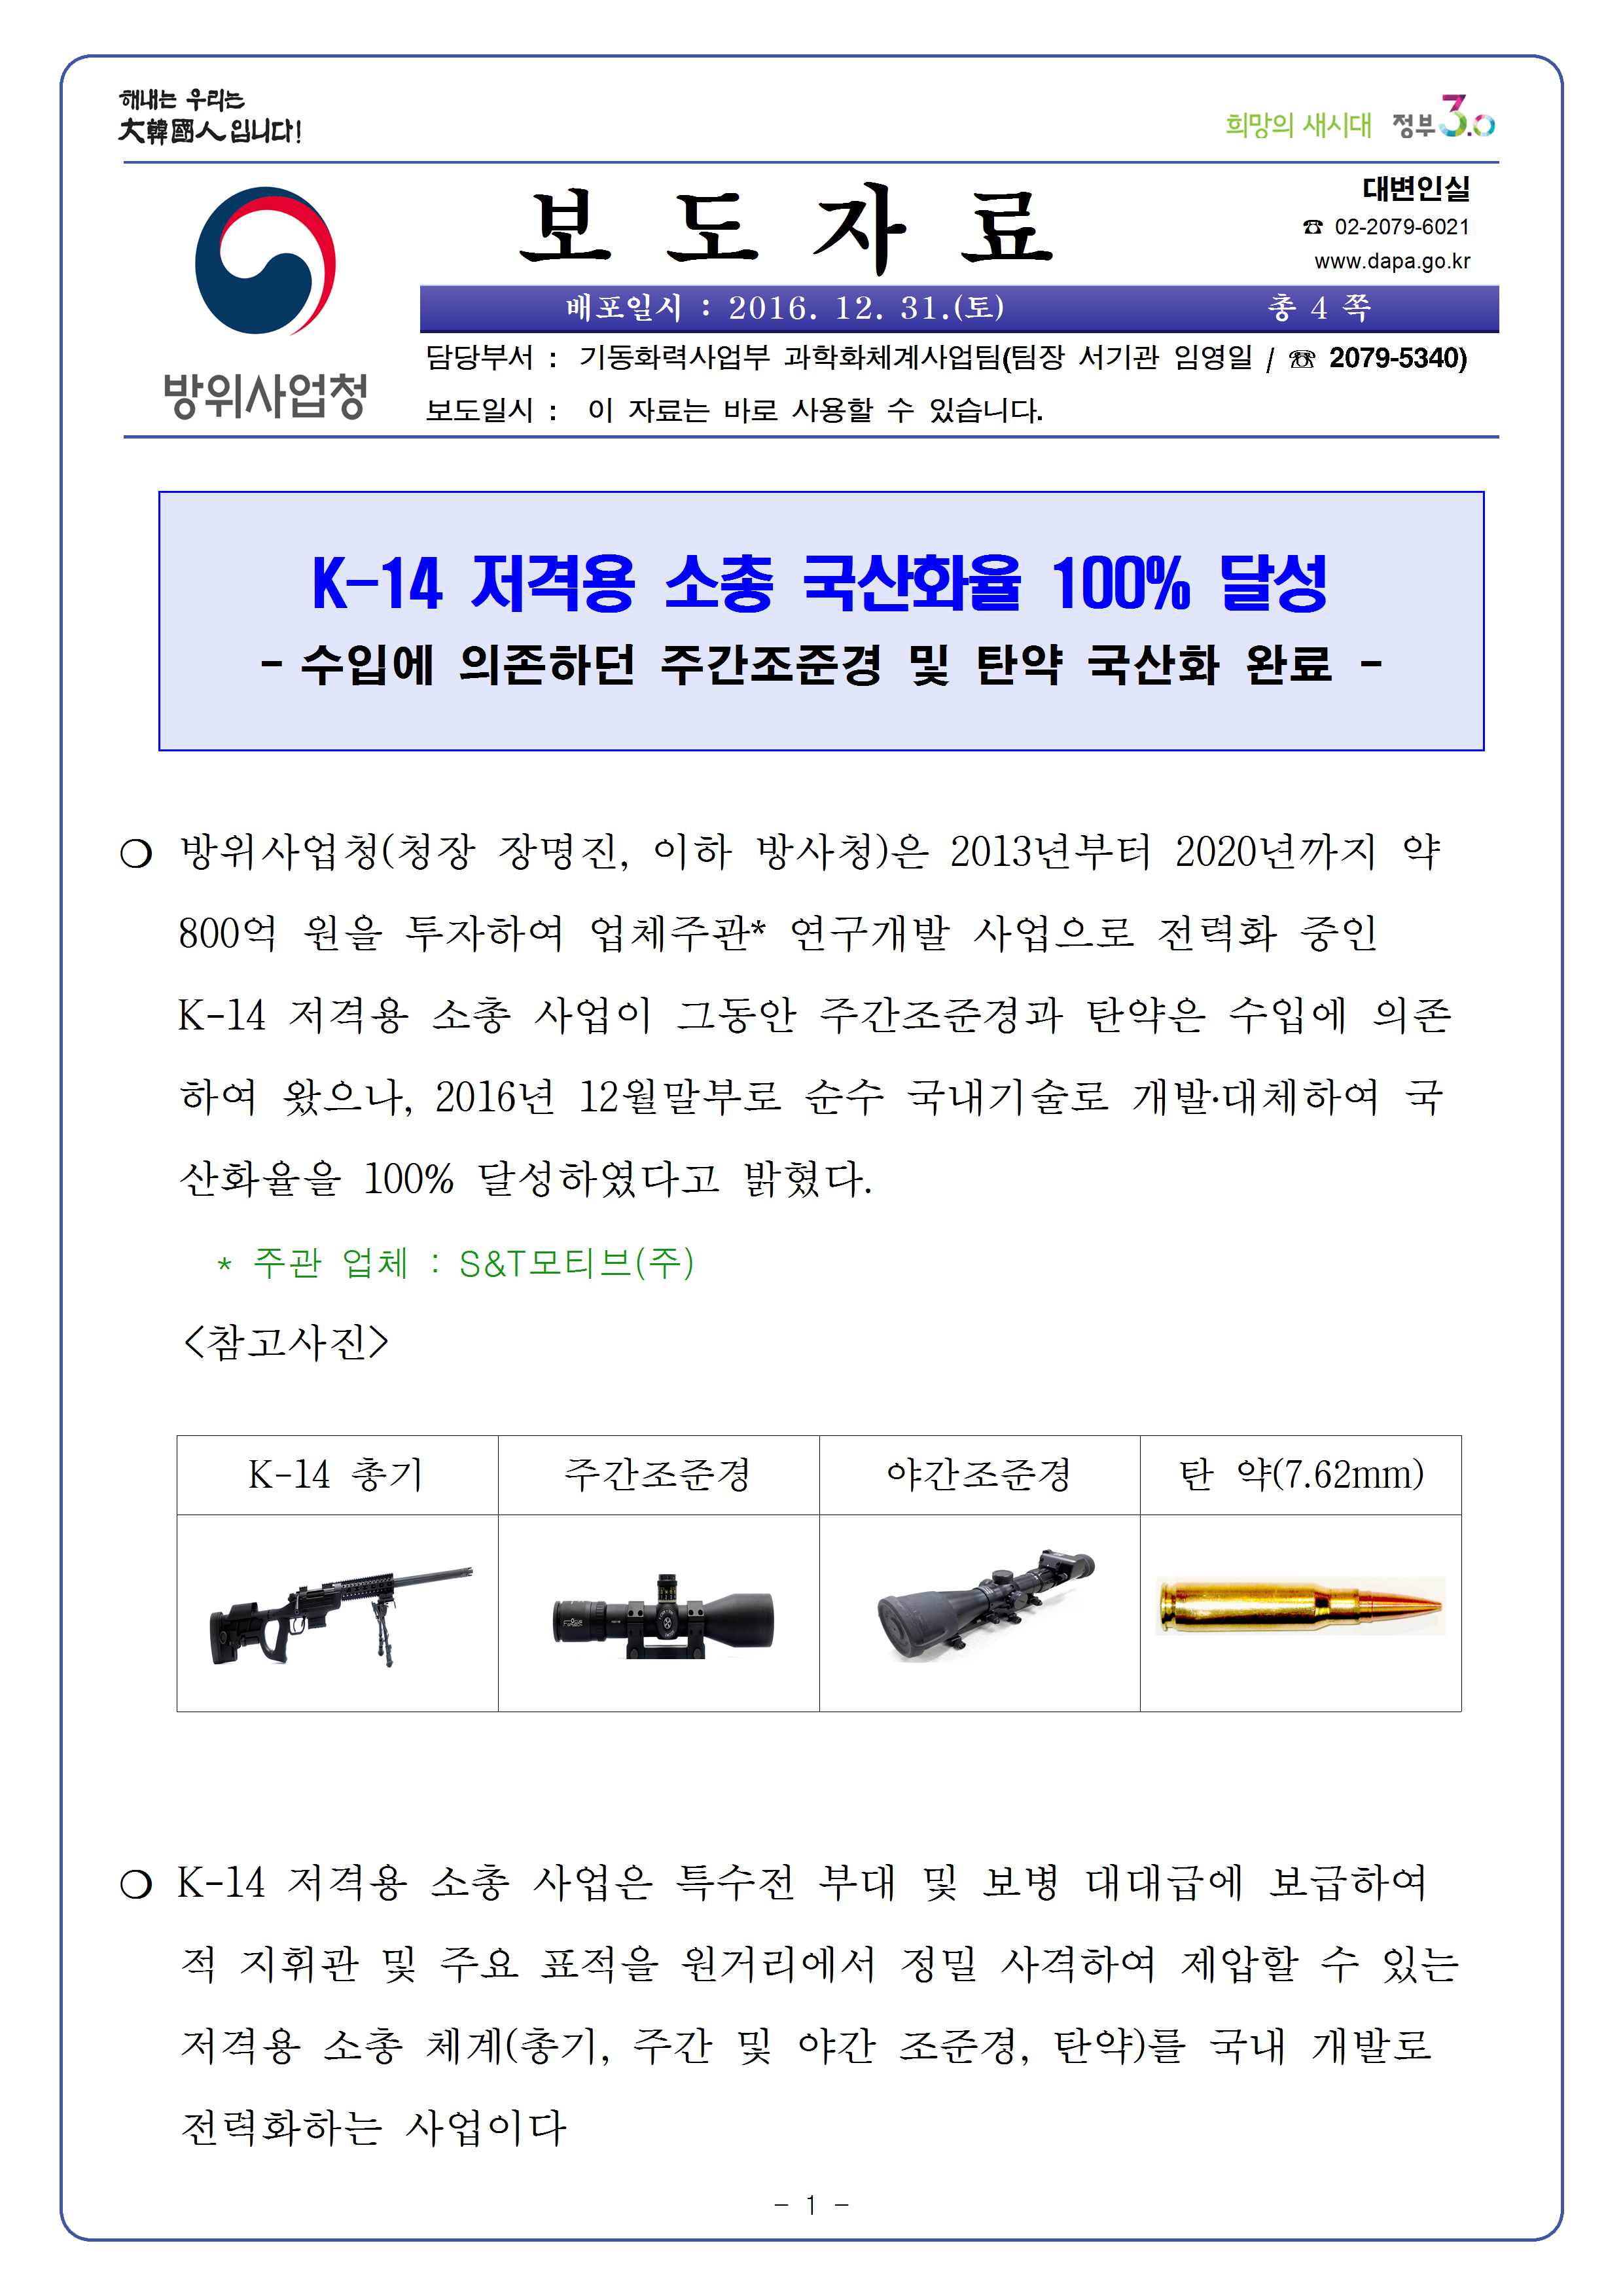 20161231_방위사업청%2C K-14 저격용 소총 체계 국산화 완료001.png